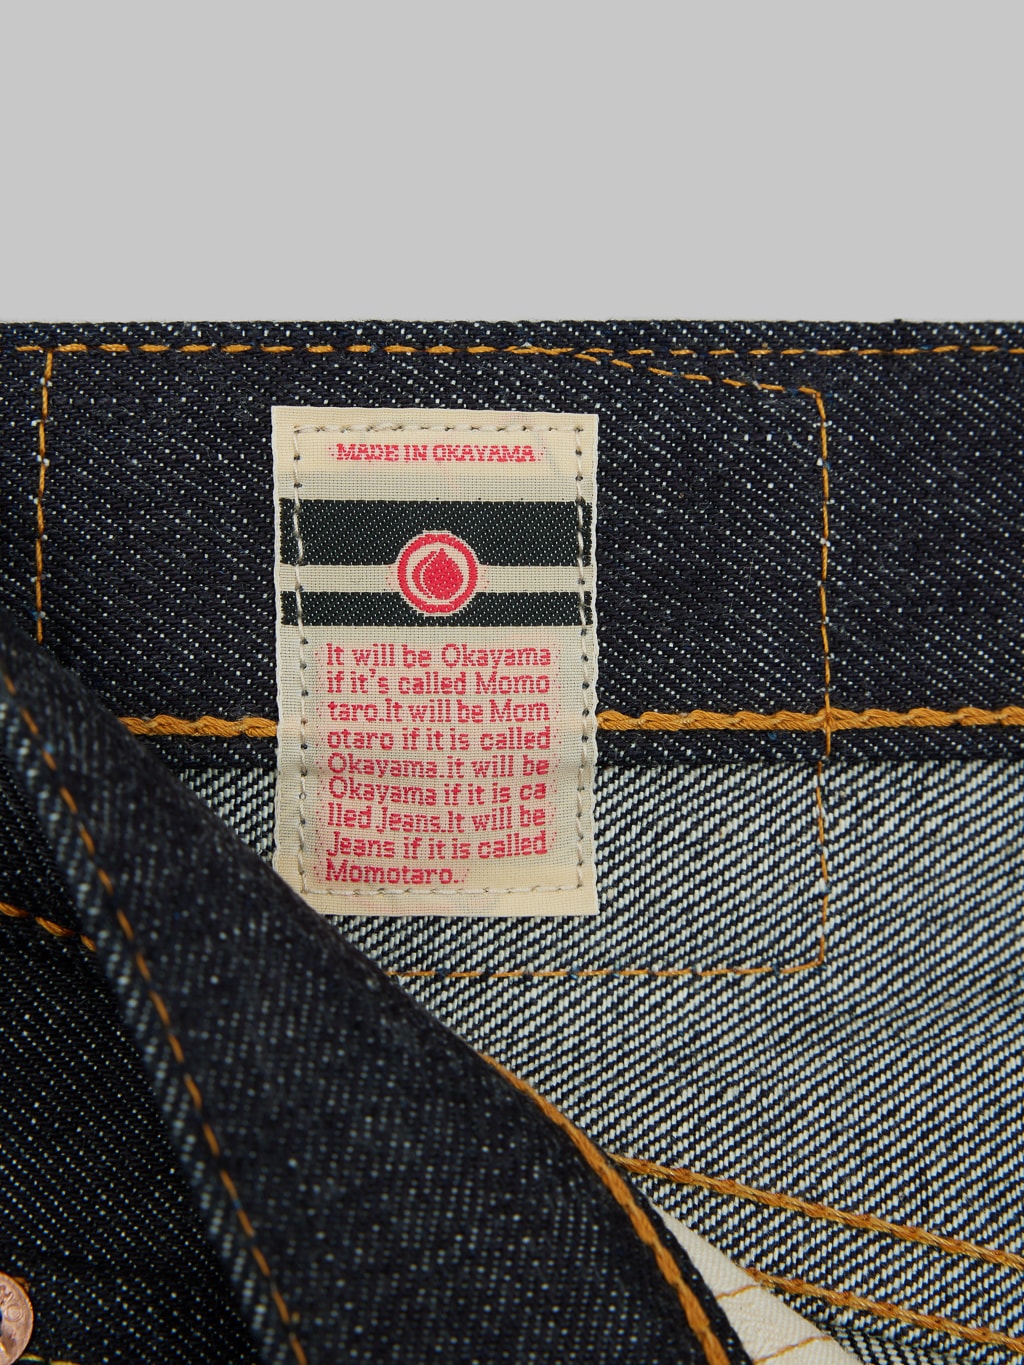 Momotaro 0306 V Tight Tapered Jeans interior tag